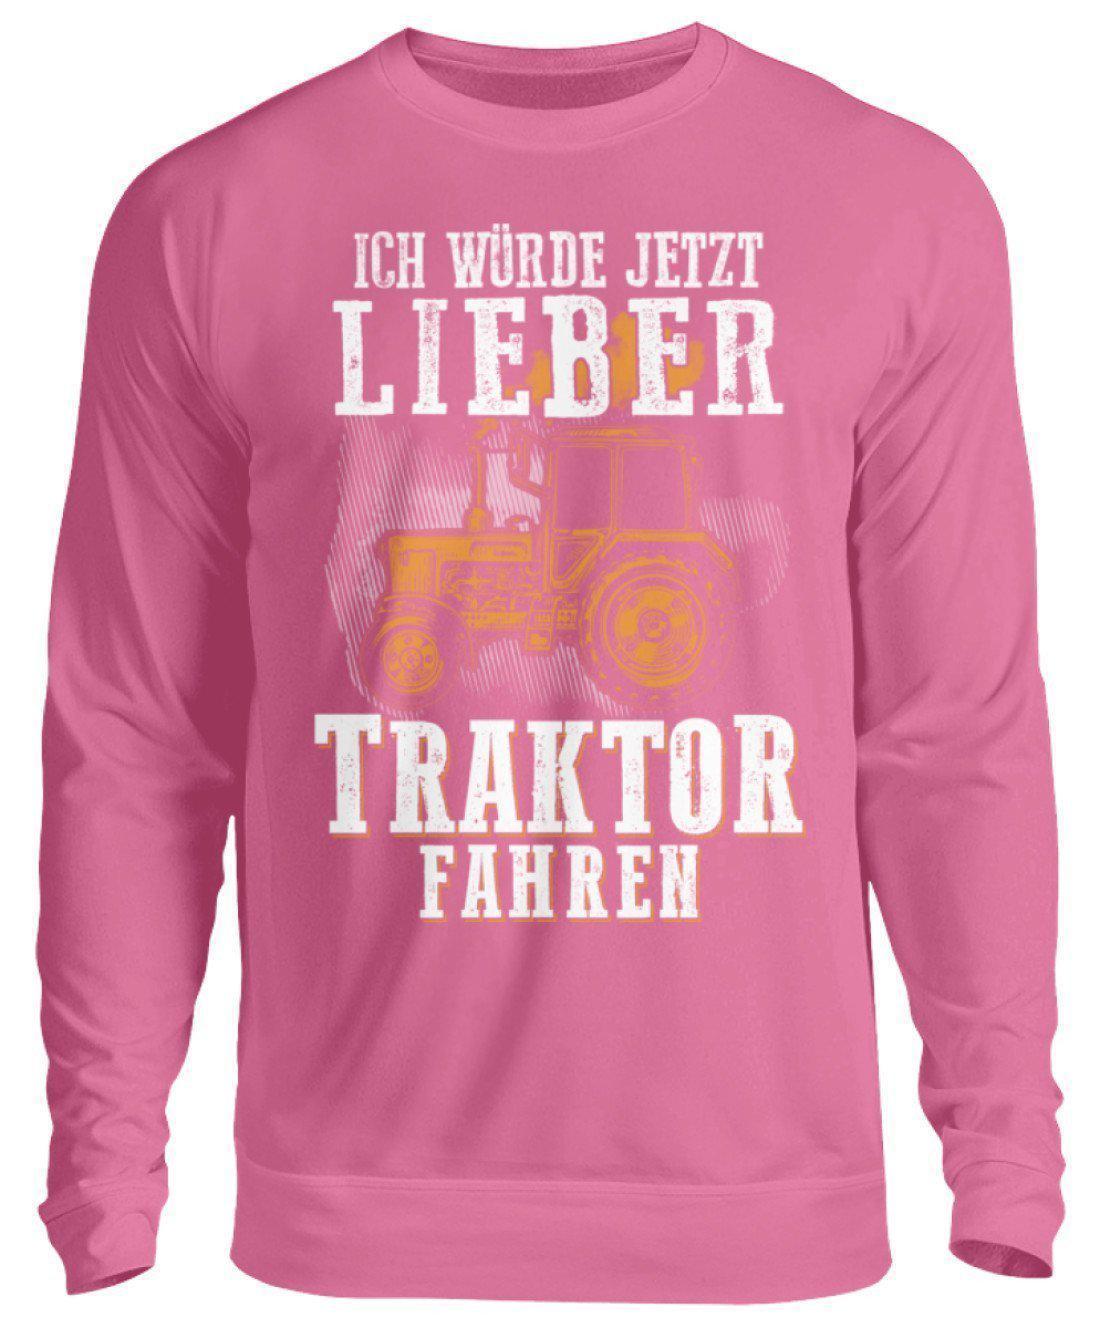 Ich würde lieber Traktor fahren · Unisex Sweatshirt Pullover-Unisex Sweatshirt-Candyfloss Pink-S-Agrarstarz